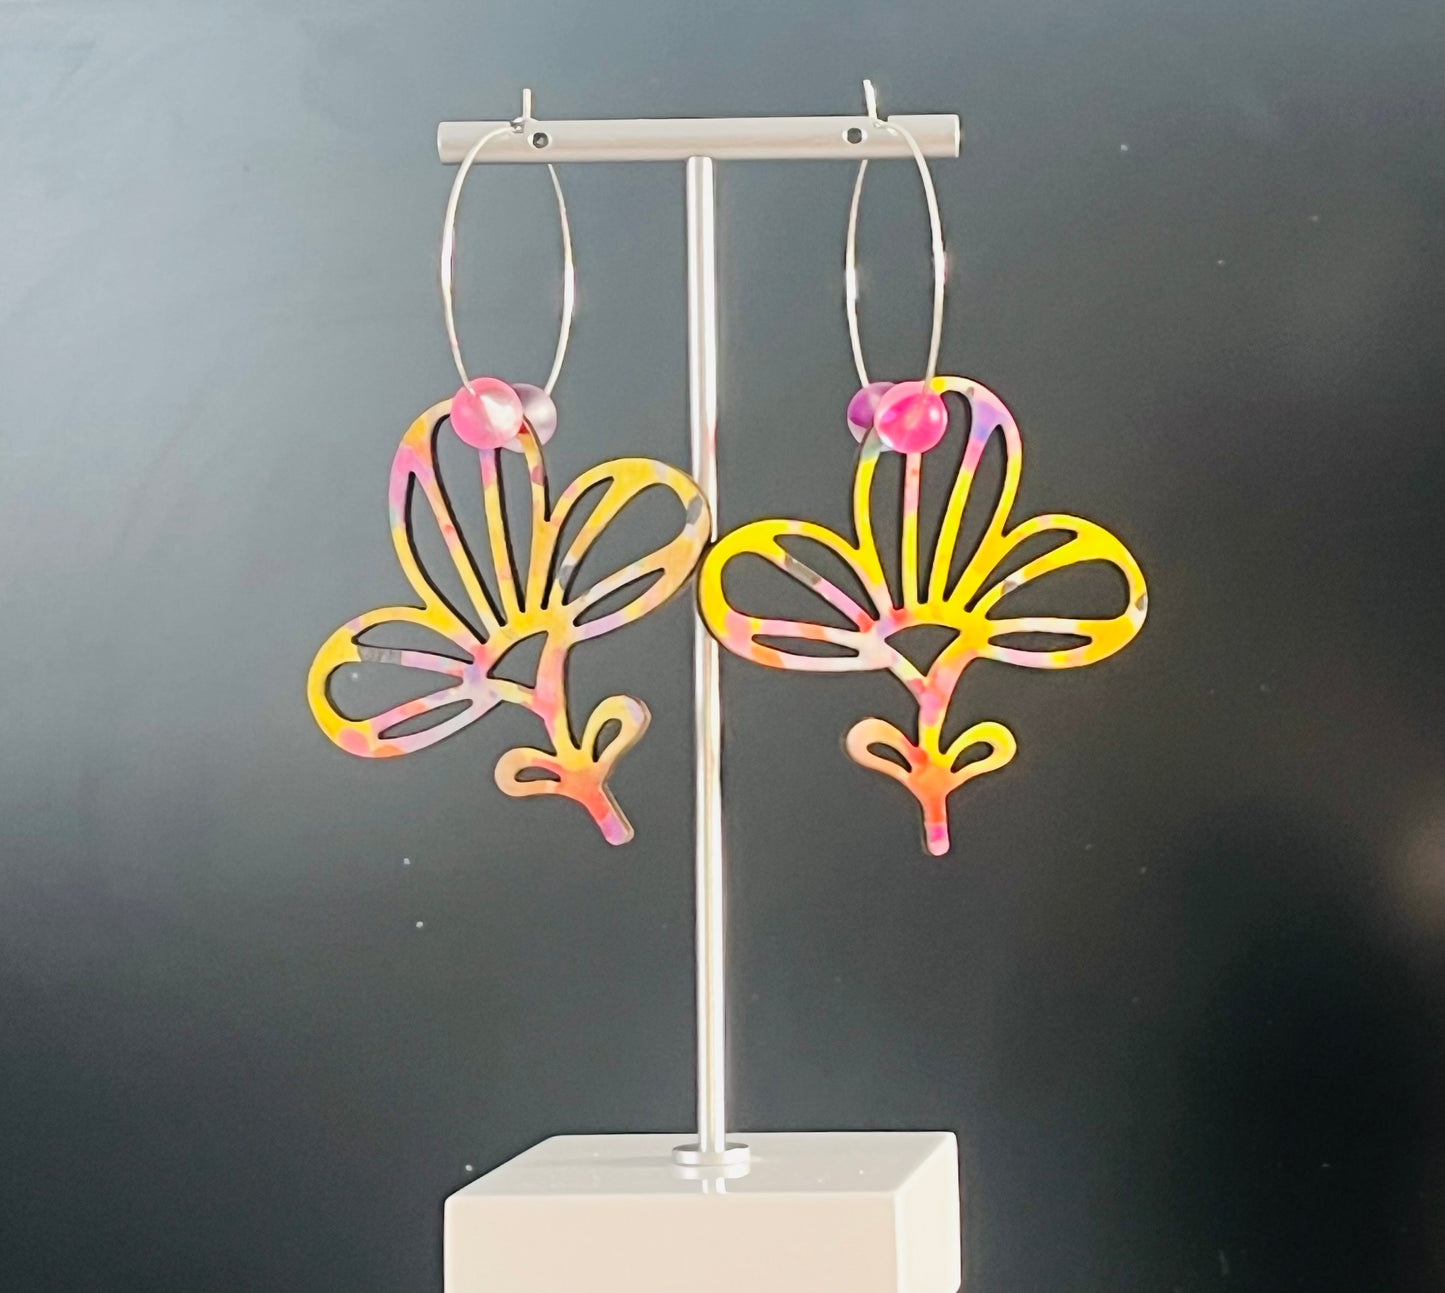 Colorful Floral Hoop Earrings